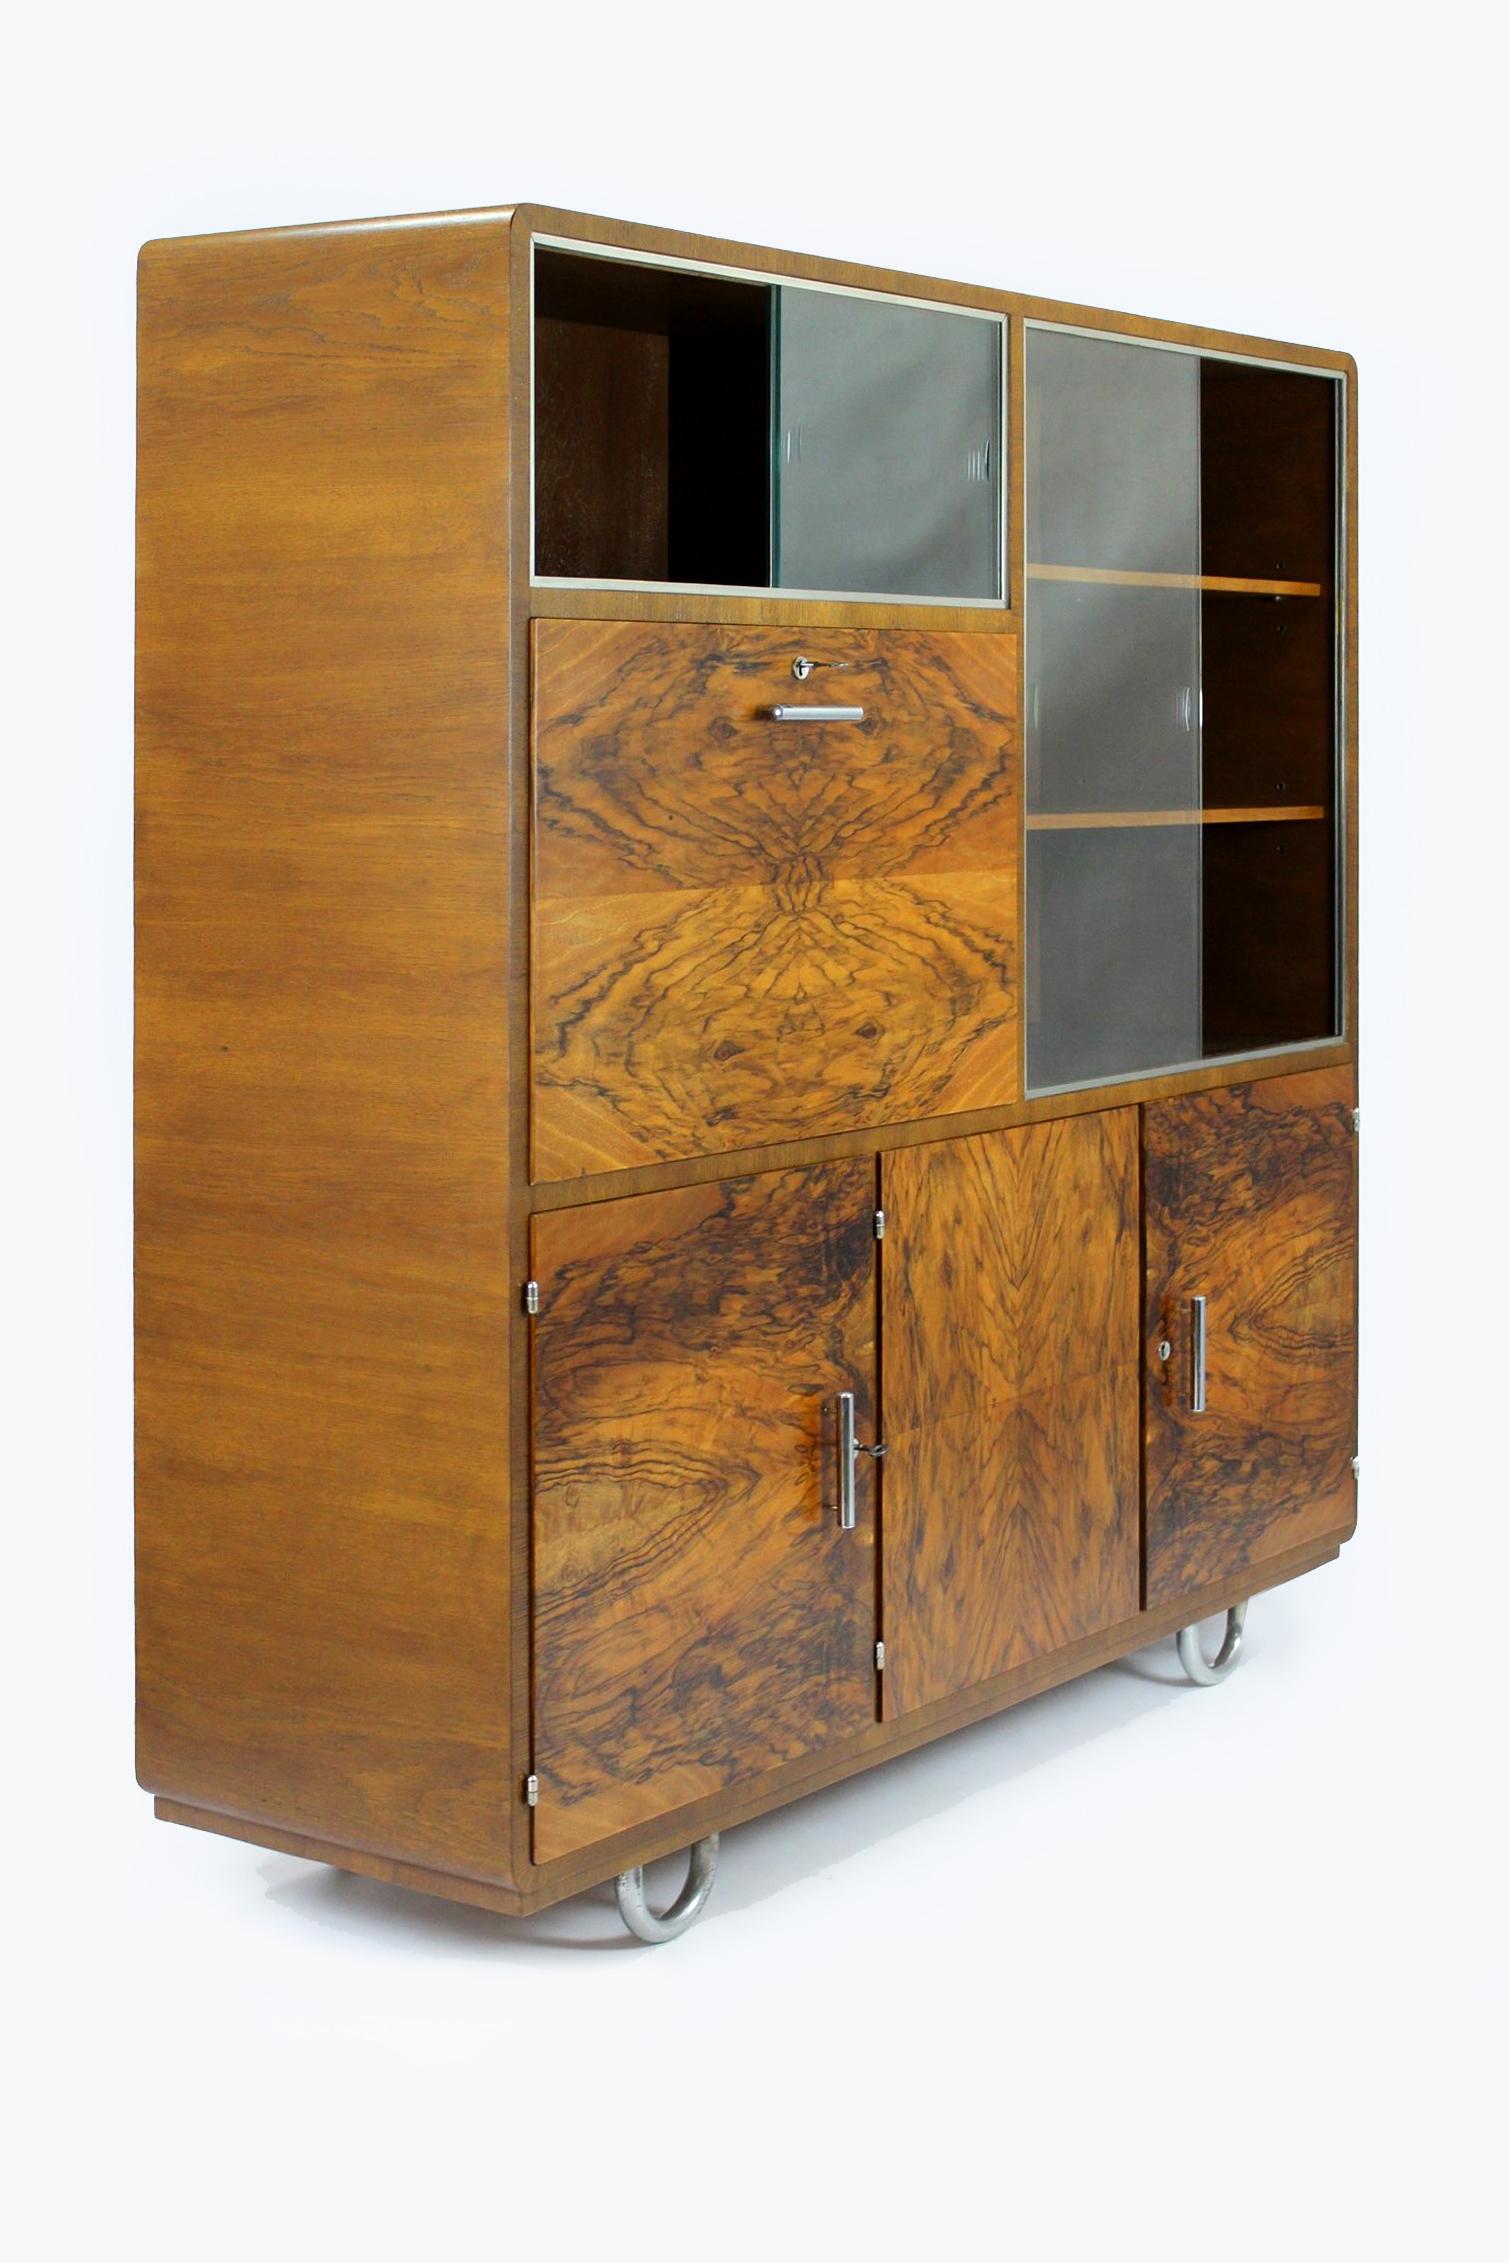 
Dieser Schrank im Bauhaus-Stil aus Eiche und Nussbaum wurde in den 1930er Jahren von Robert Slezak hergestellt. Der Schrank ist multifunktional und in 5 Teile unterteilt. Es gibt 4 Schubladen, 3 Regale, 2 Vitrinenteile mit Schiebeglas (das Glas ist